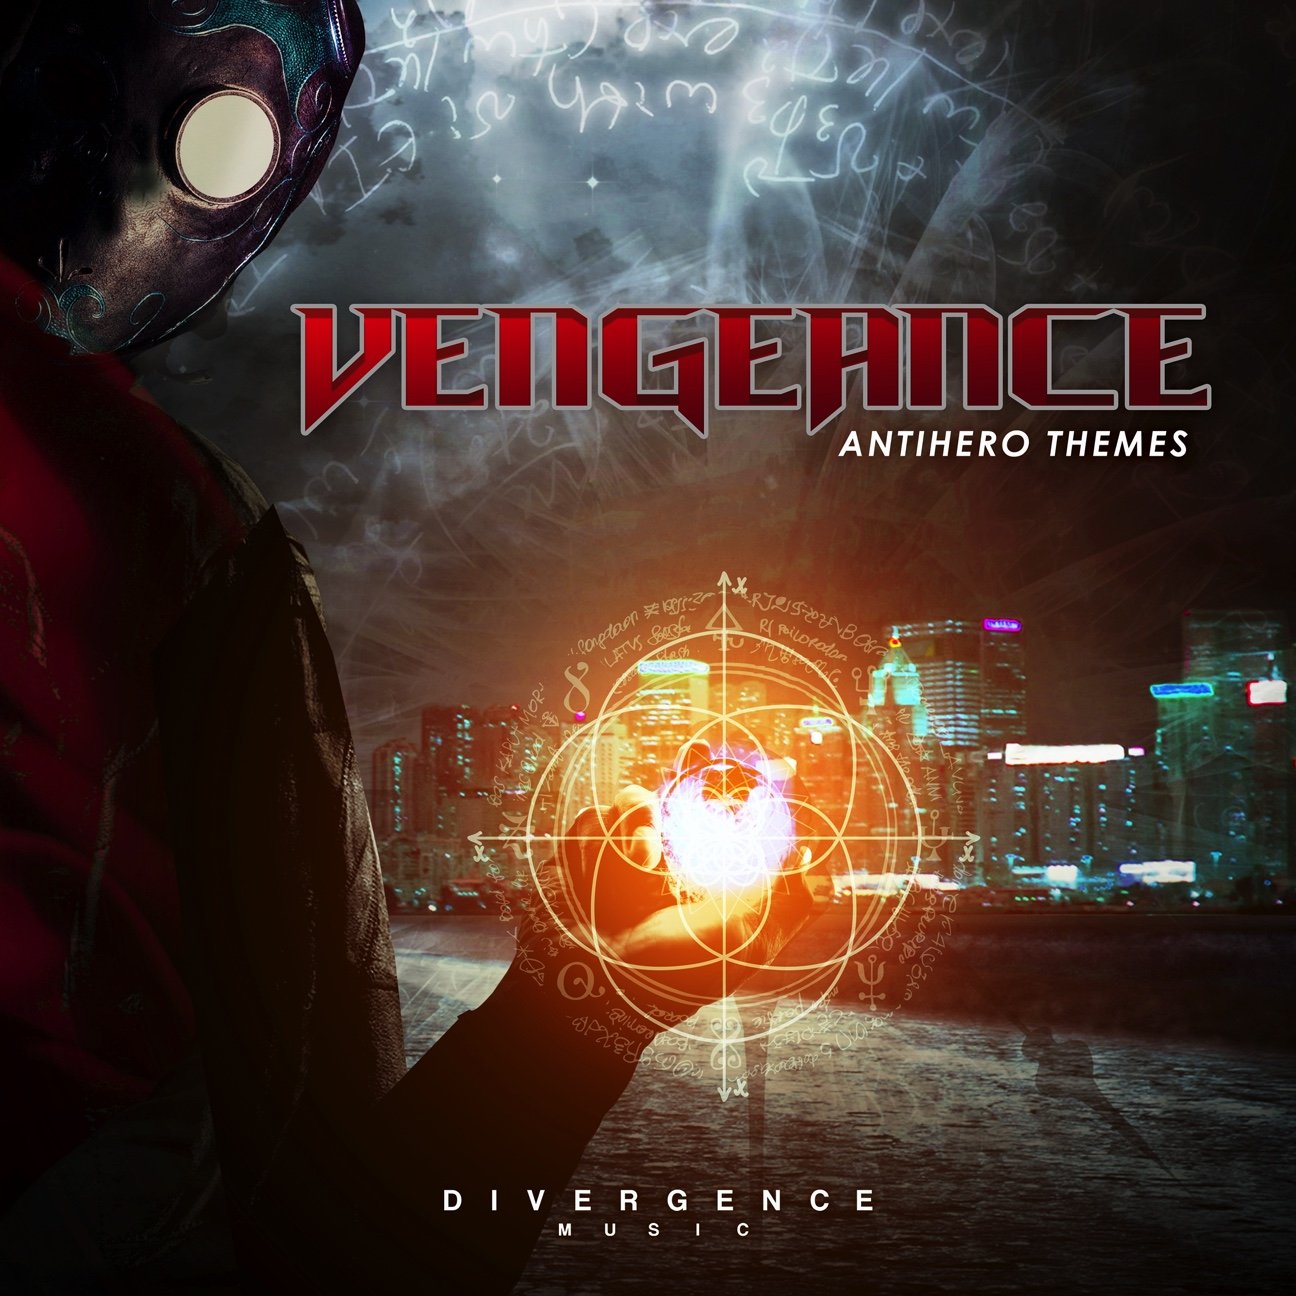 DVRG-012 Vengeance_Antihero Themes_cover.jpg